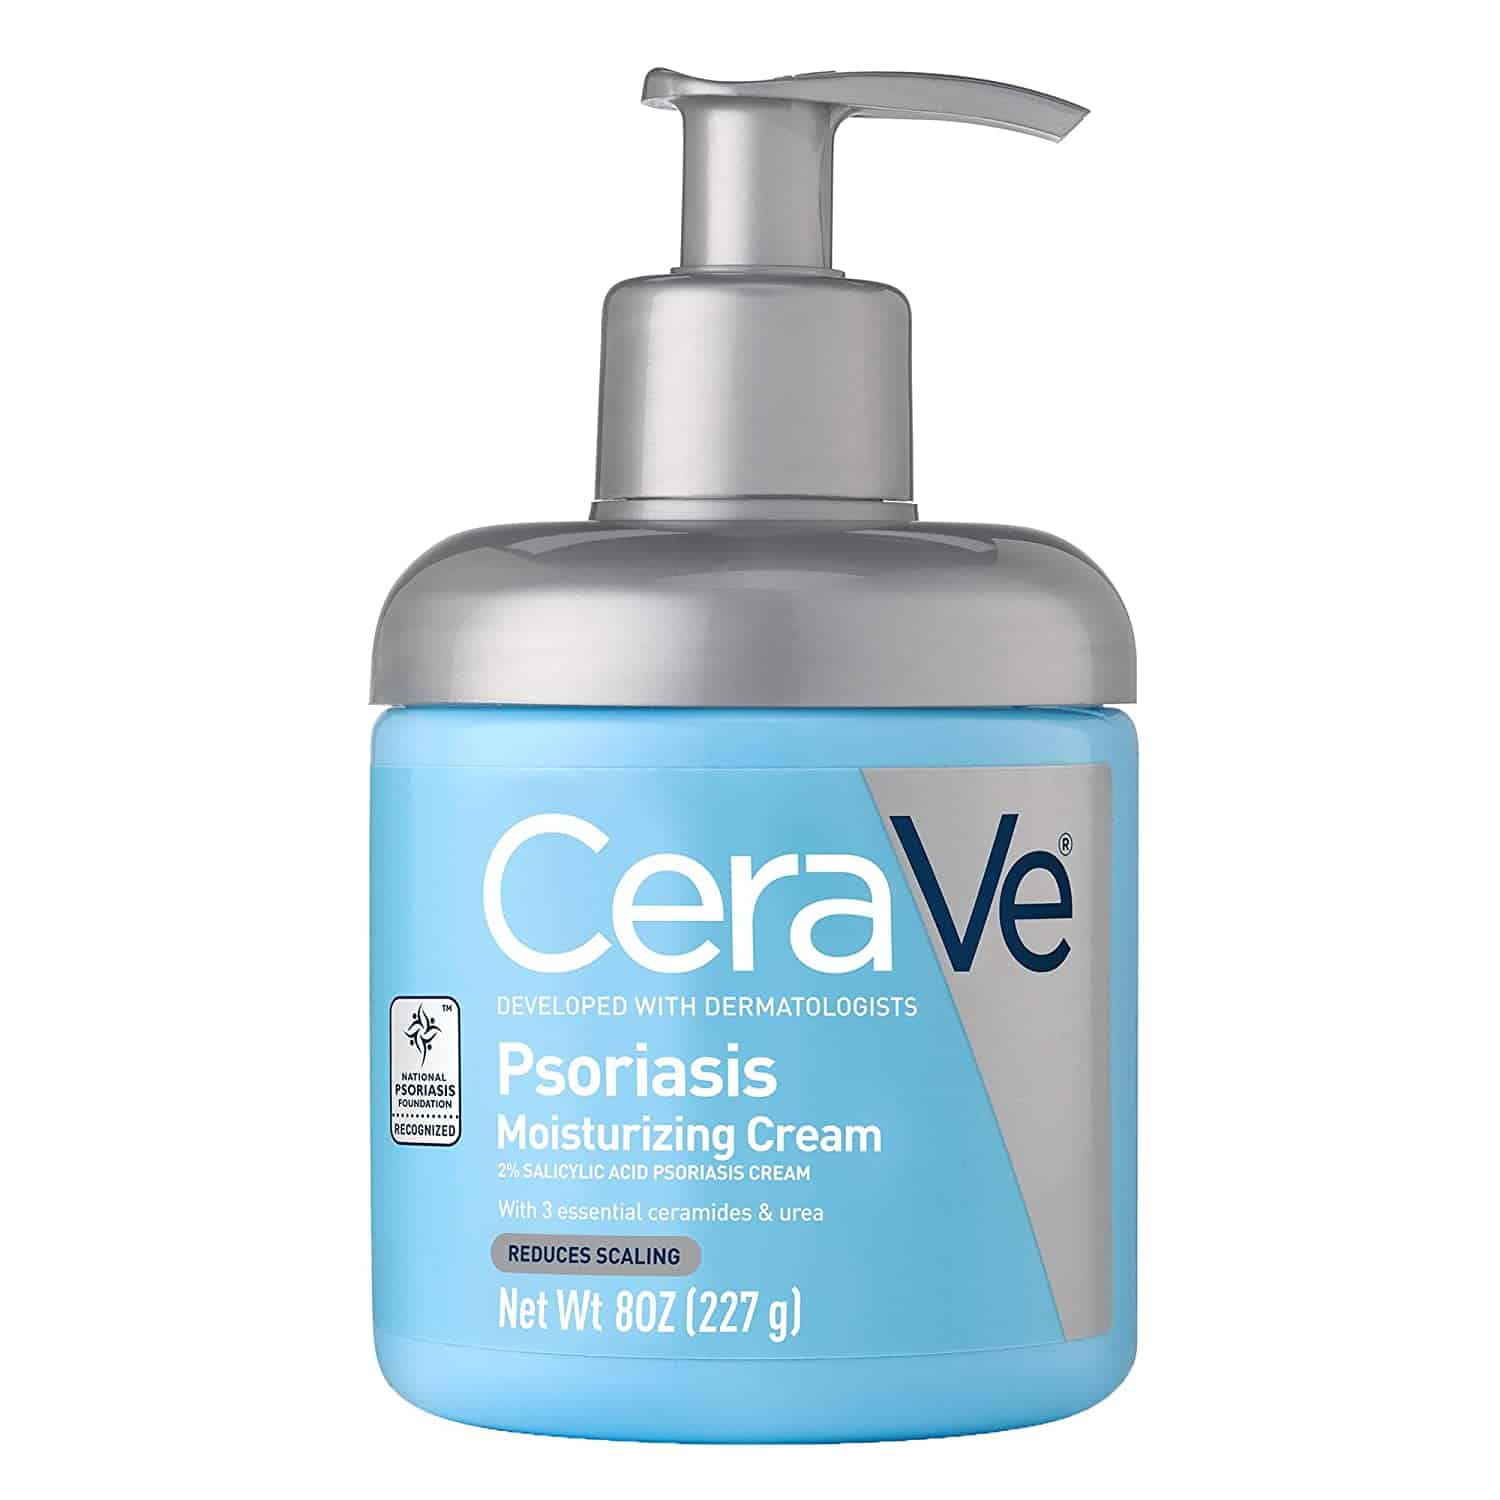 cerave moisturizing cream psoriasis reviews